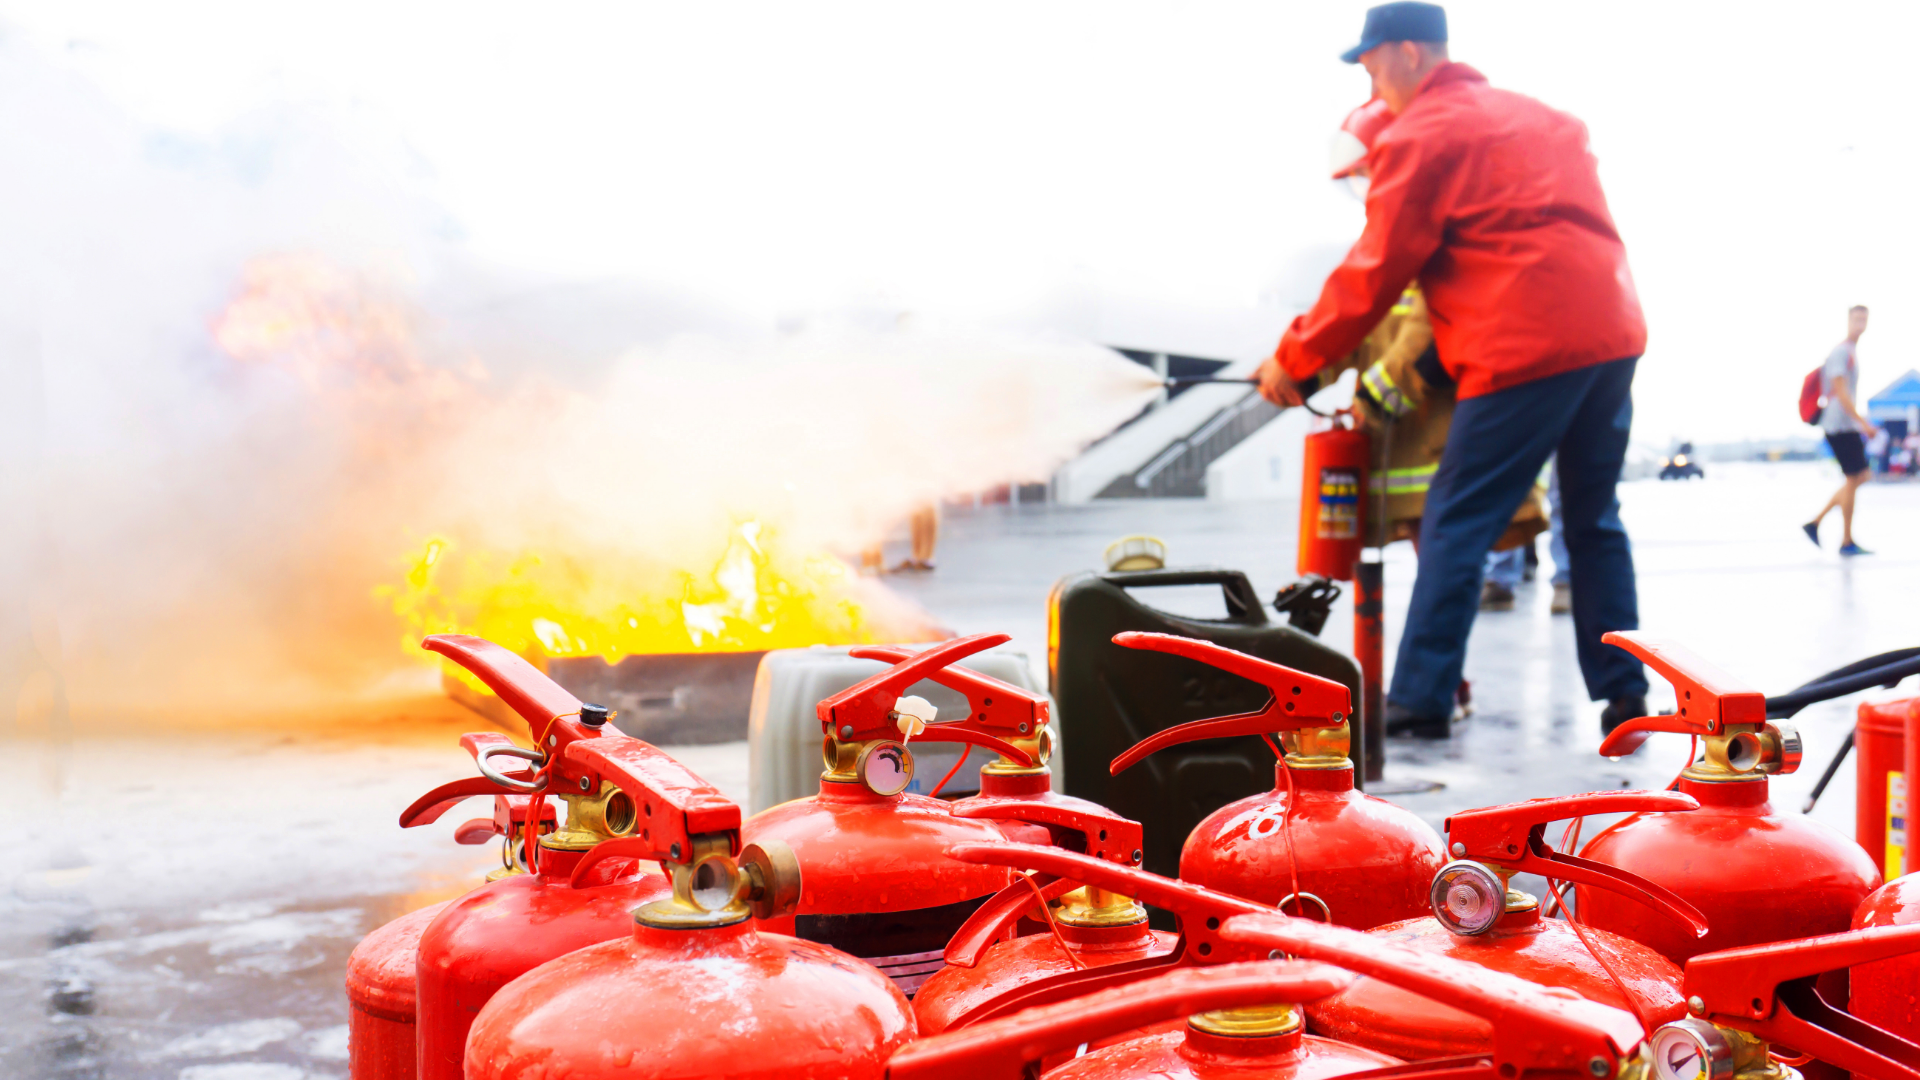 Προληψη εναντια σε πυρκαγια στην εργασια